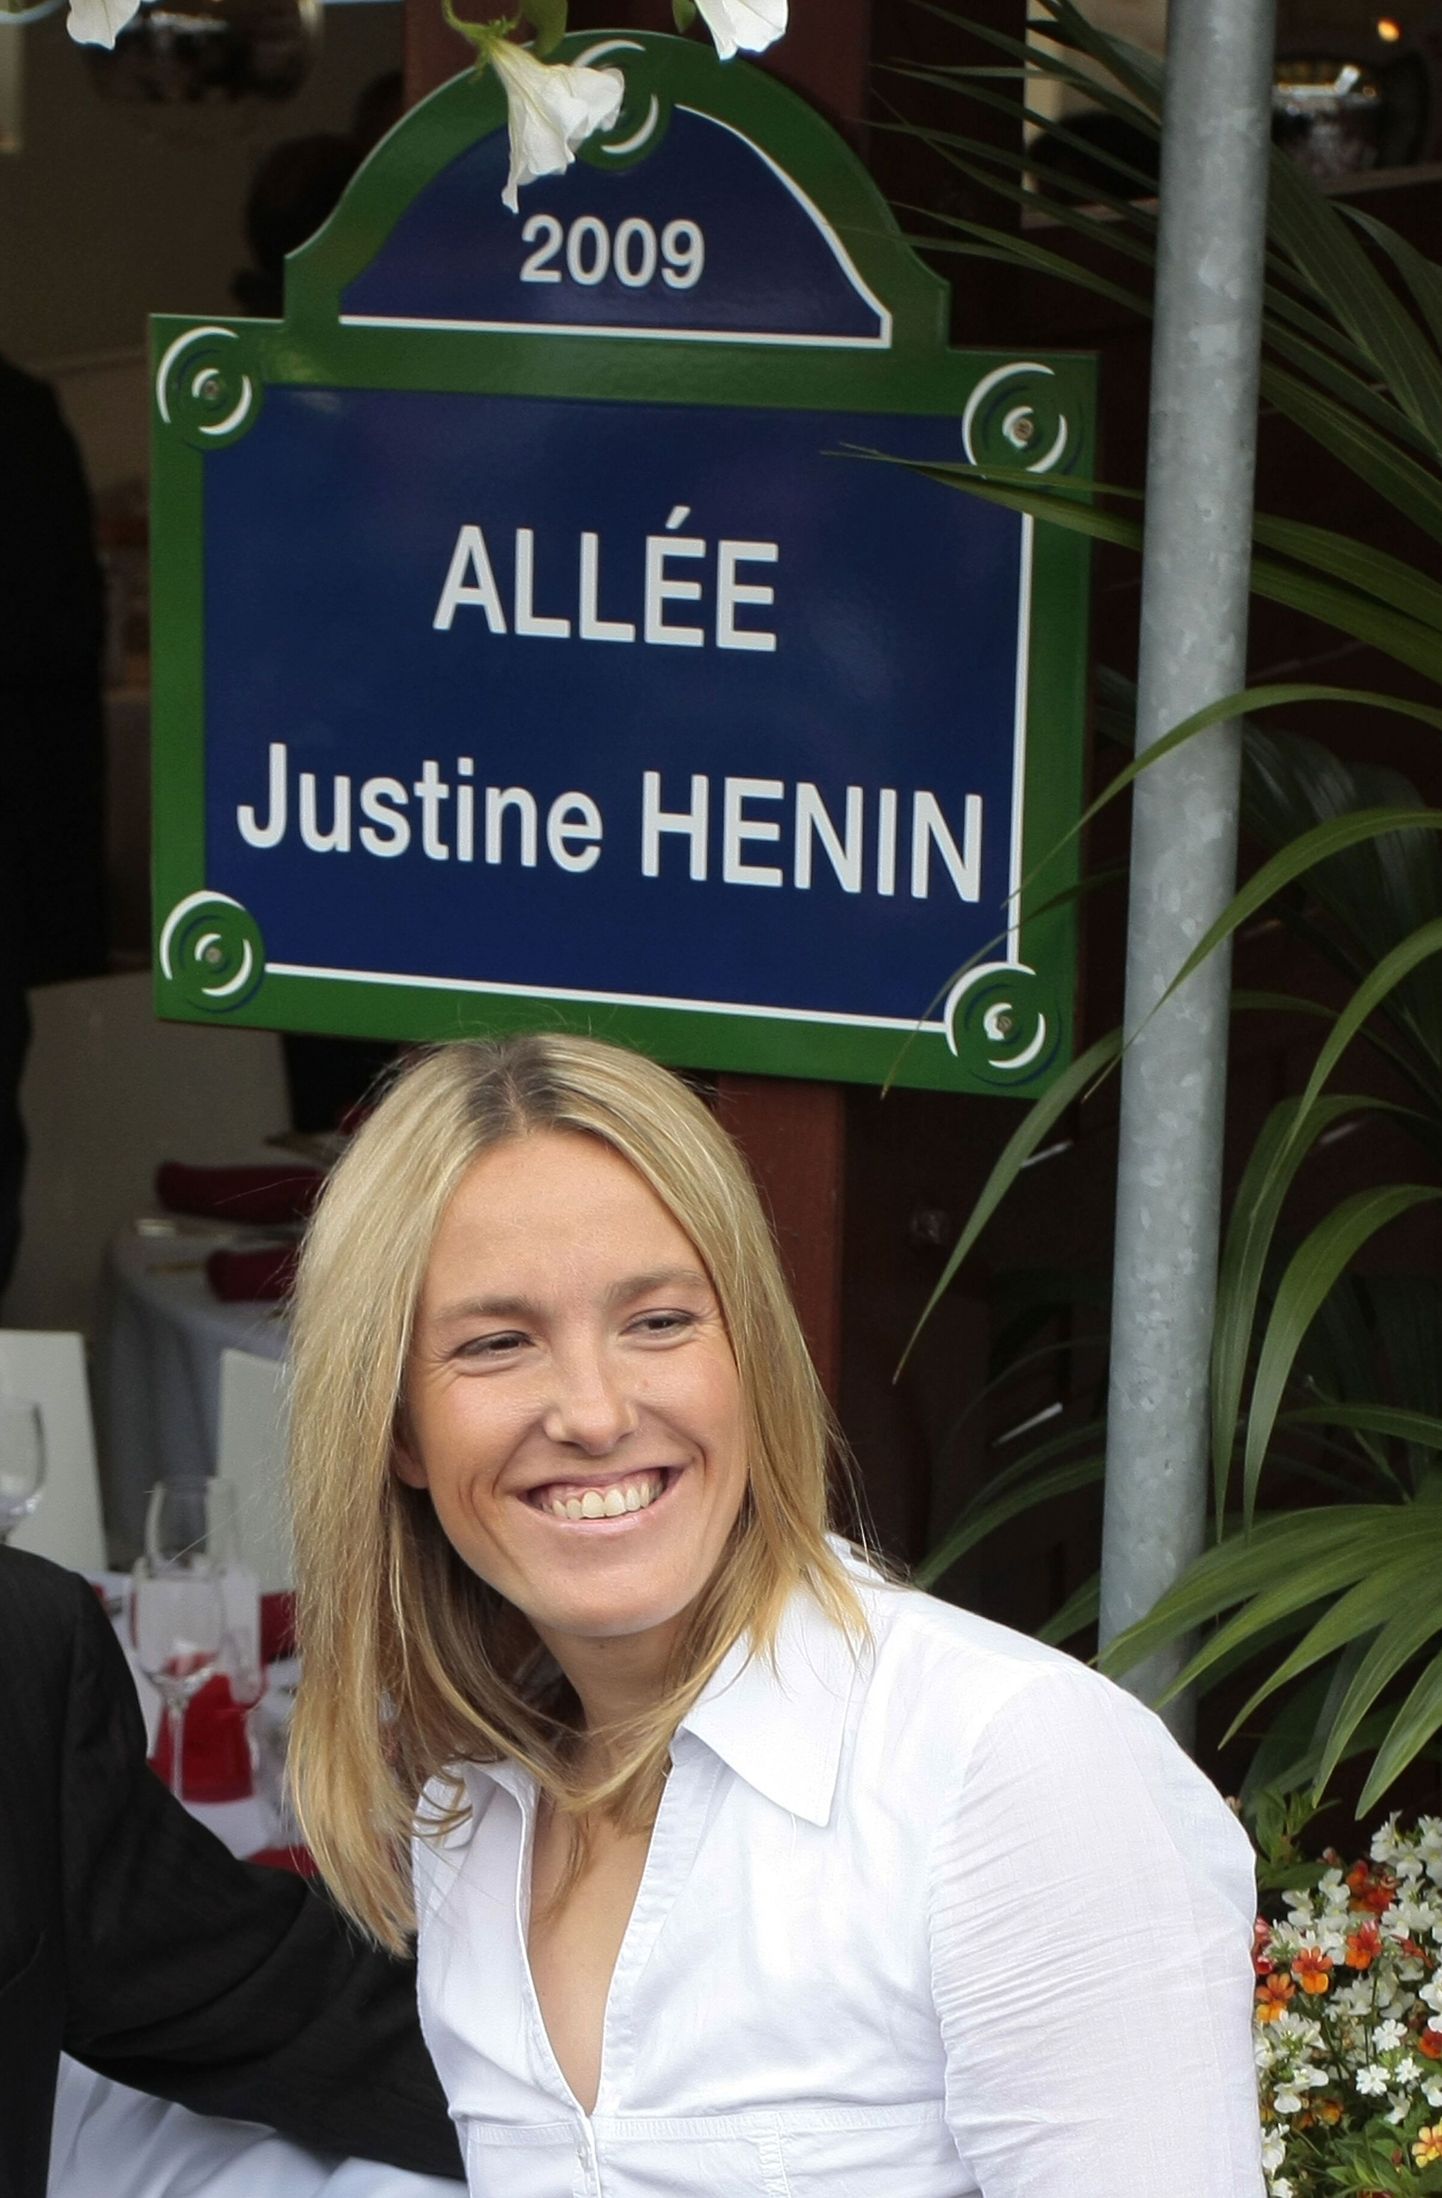 Justine Henin osales eile Prantsusmaa lahtistel omanimelise allee avamisel.